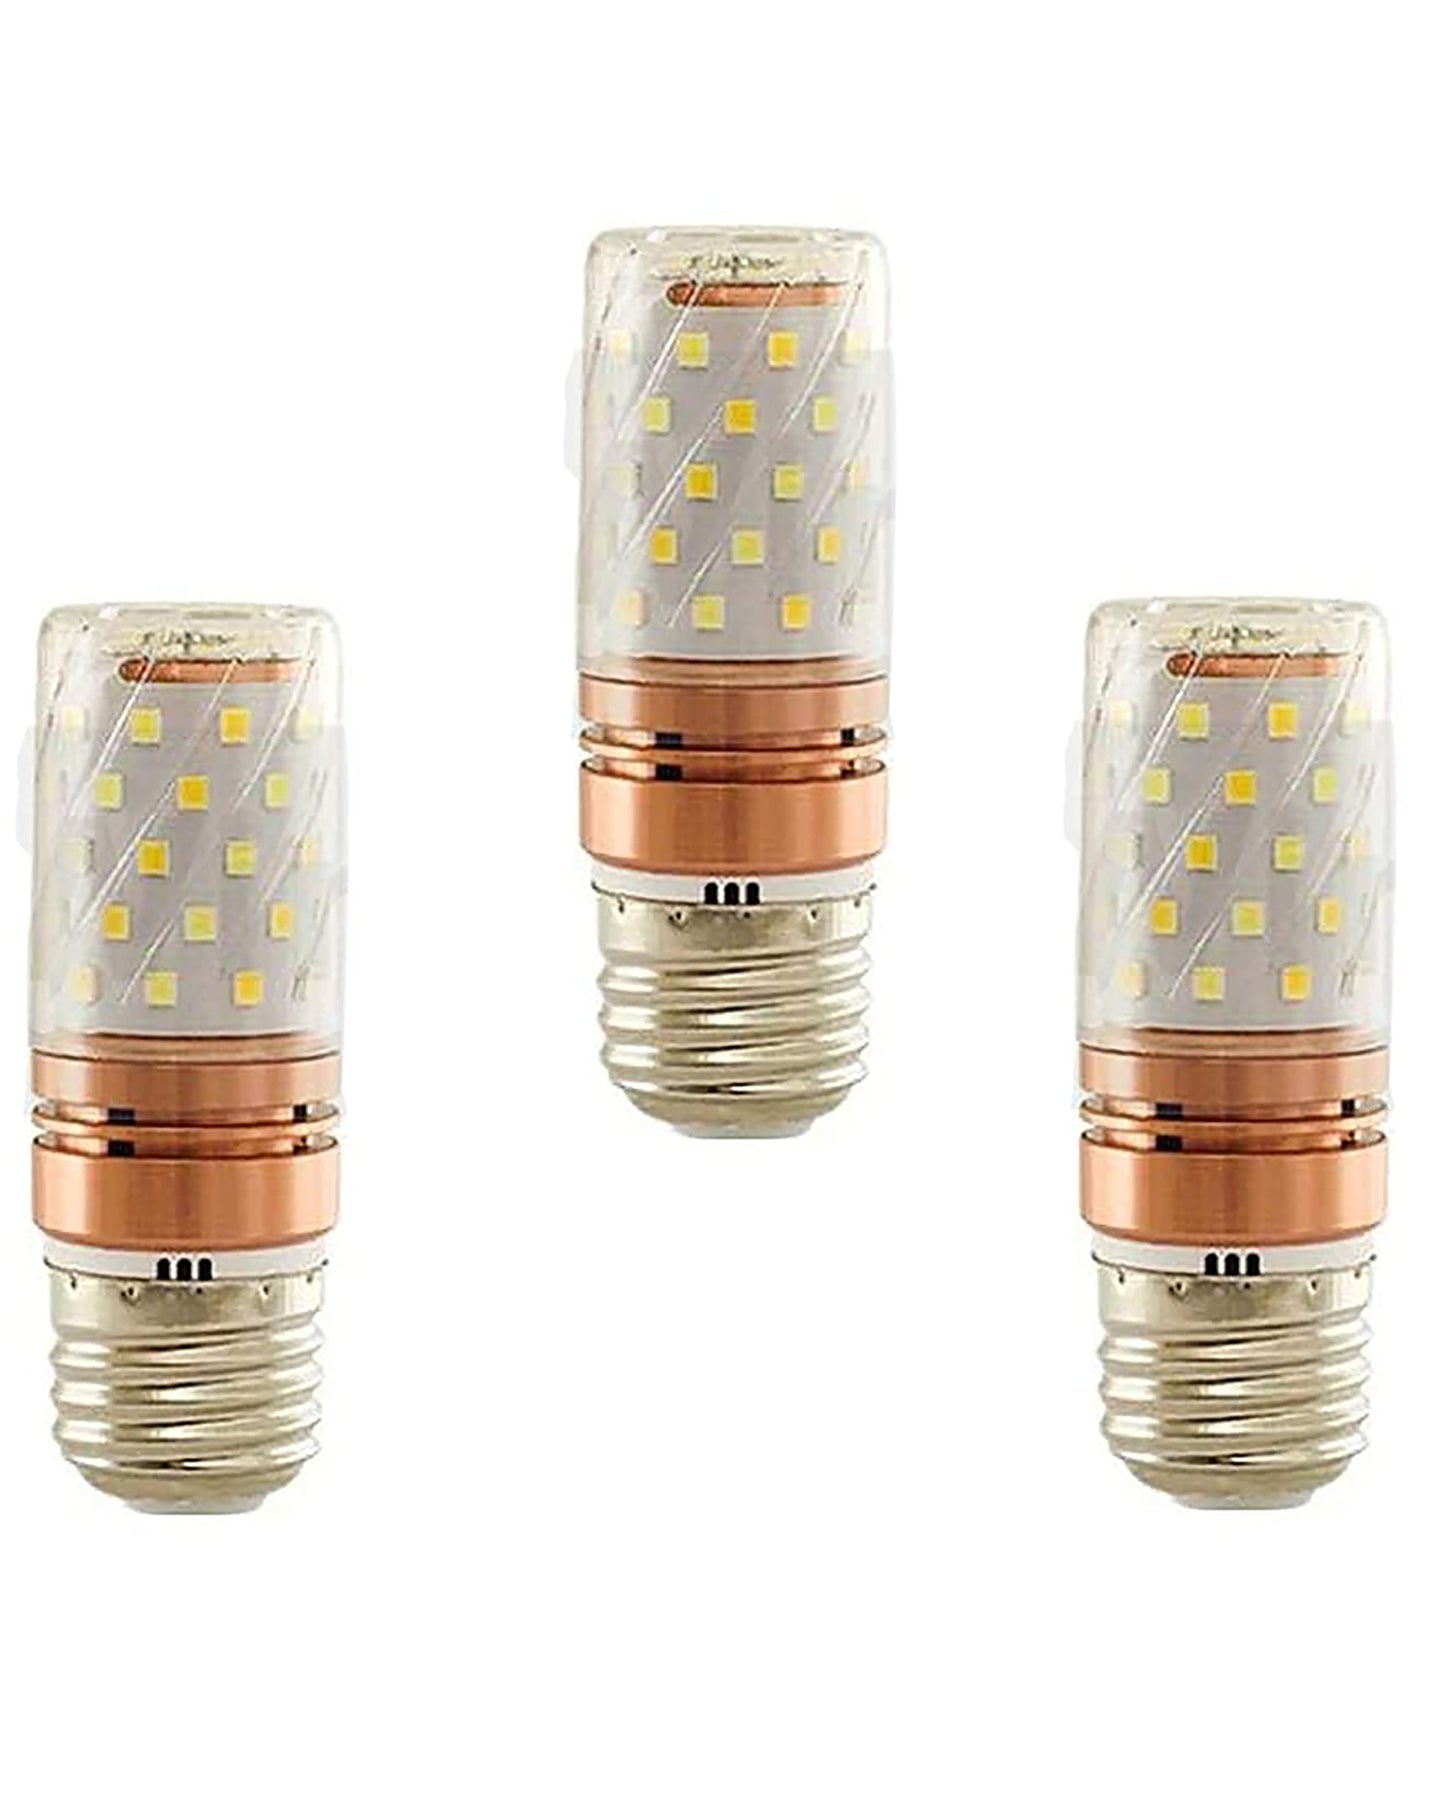 6 Watt, 3 in 1 Multicolor Led Bulb, Cool White, Warm White, Neutral White LED Bulb, E27, set of 3